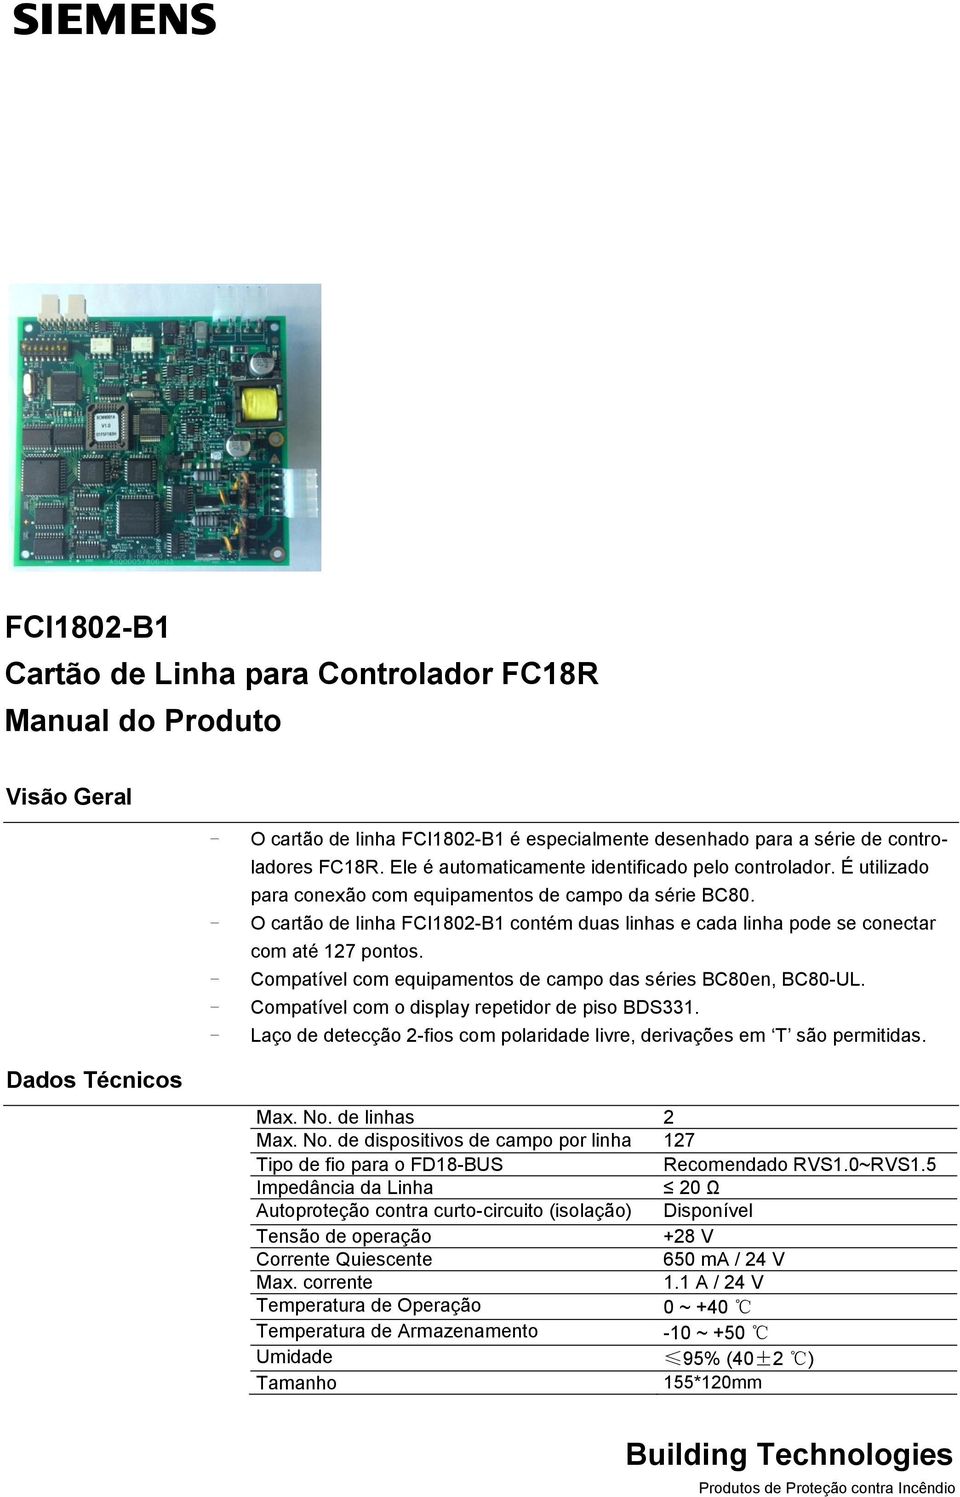 - O cartão de linha FCI1802-B1 contém duas linhas e cada linha pode se conectar com até 127 pontos. - Compatível com equipamentos de campo das séries BC80en, BC80-UL.